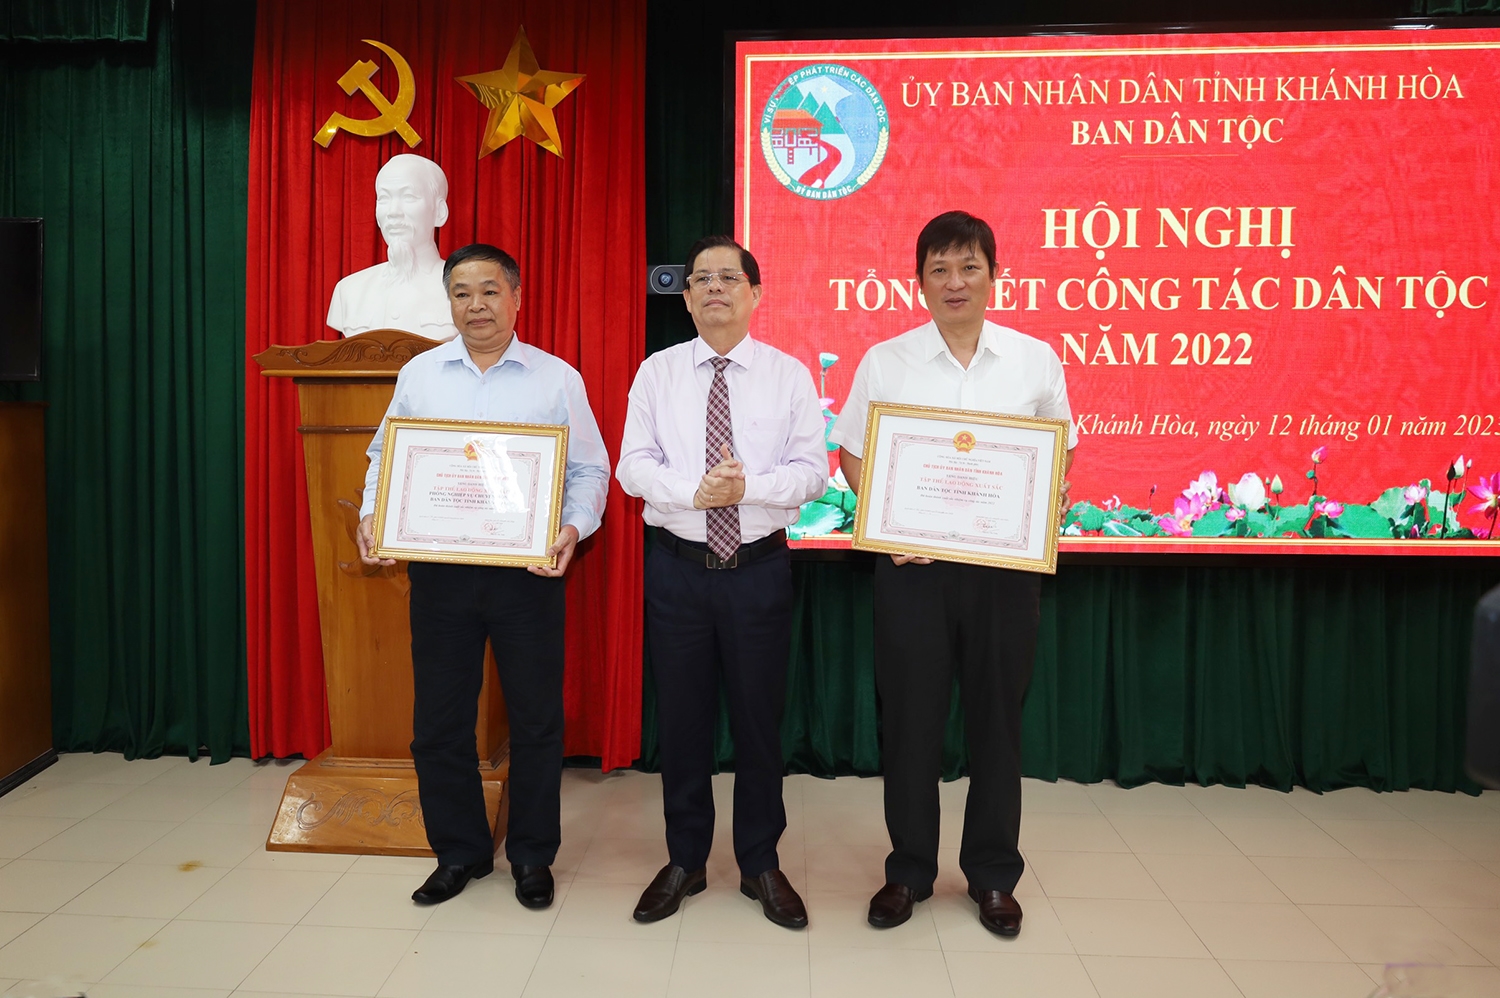 Chủ tịch UBND tỉnh Khánh Hòa Nguyễn Tấn Tuân trao tặng danh hiệu Tập thể Lao động xuất sắc cho 2 tập thể thuộc Ban Dân tộc tỉnh Khánh Hòa